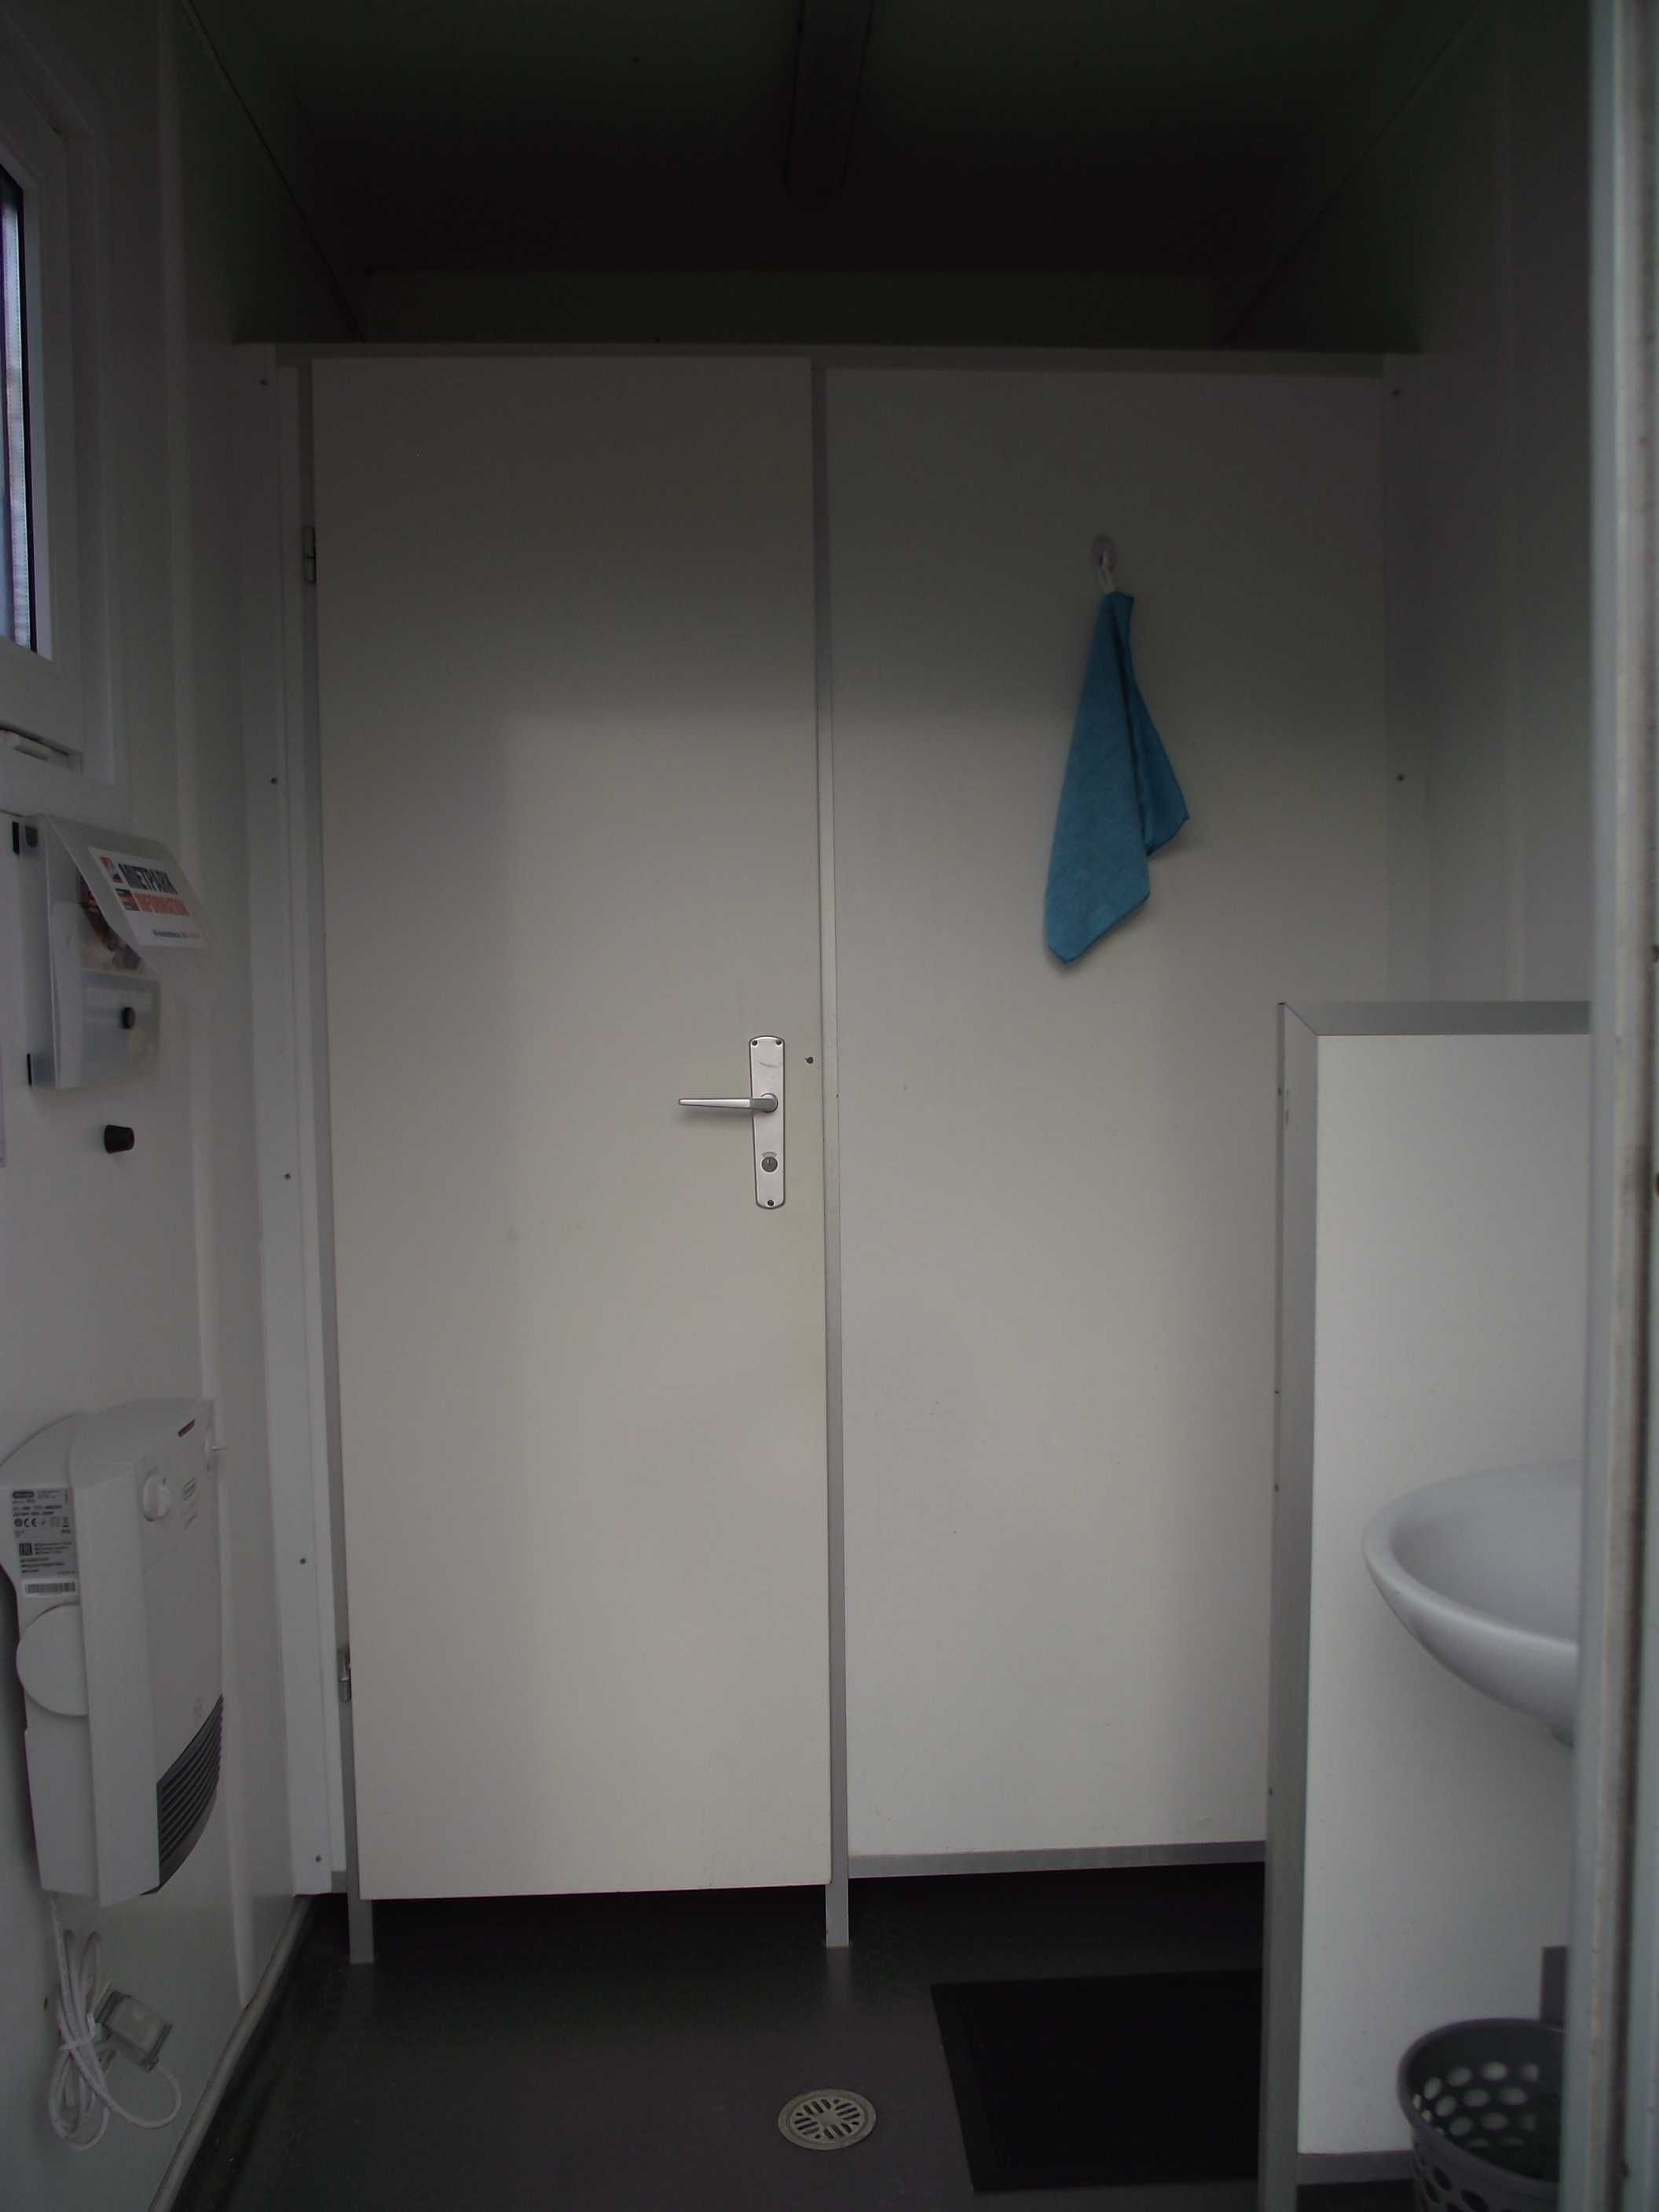 Kontener sanitarny damsko-męski WC socjalny możliwość zakupu z szambem